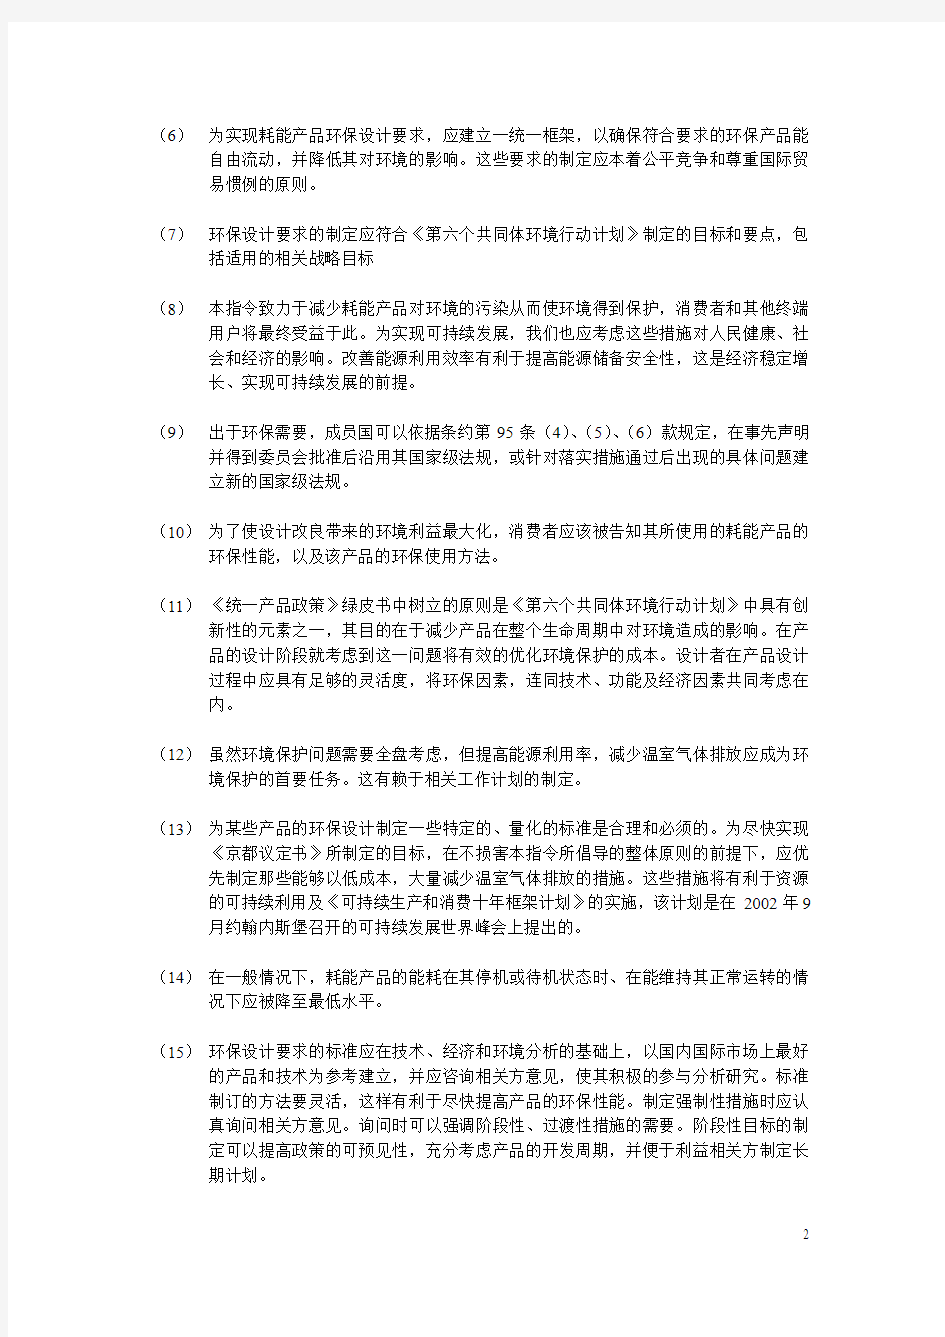 EUP指令2005-32-EC (中文版)